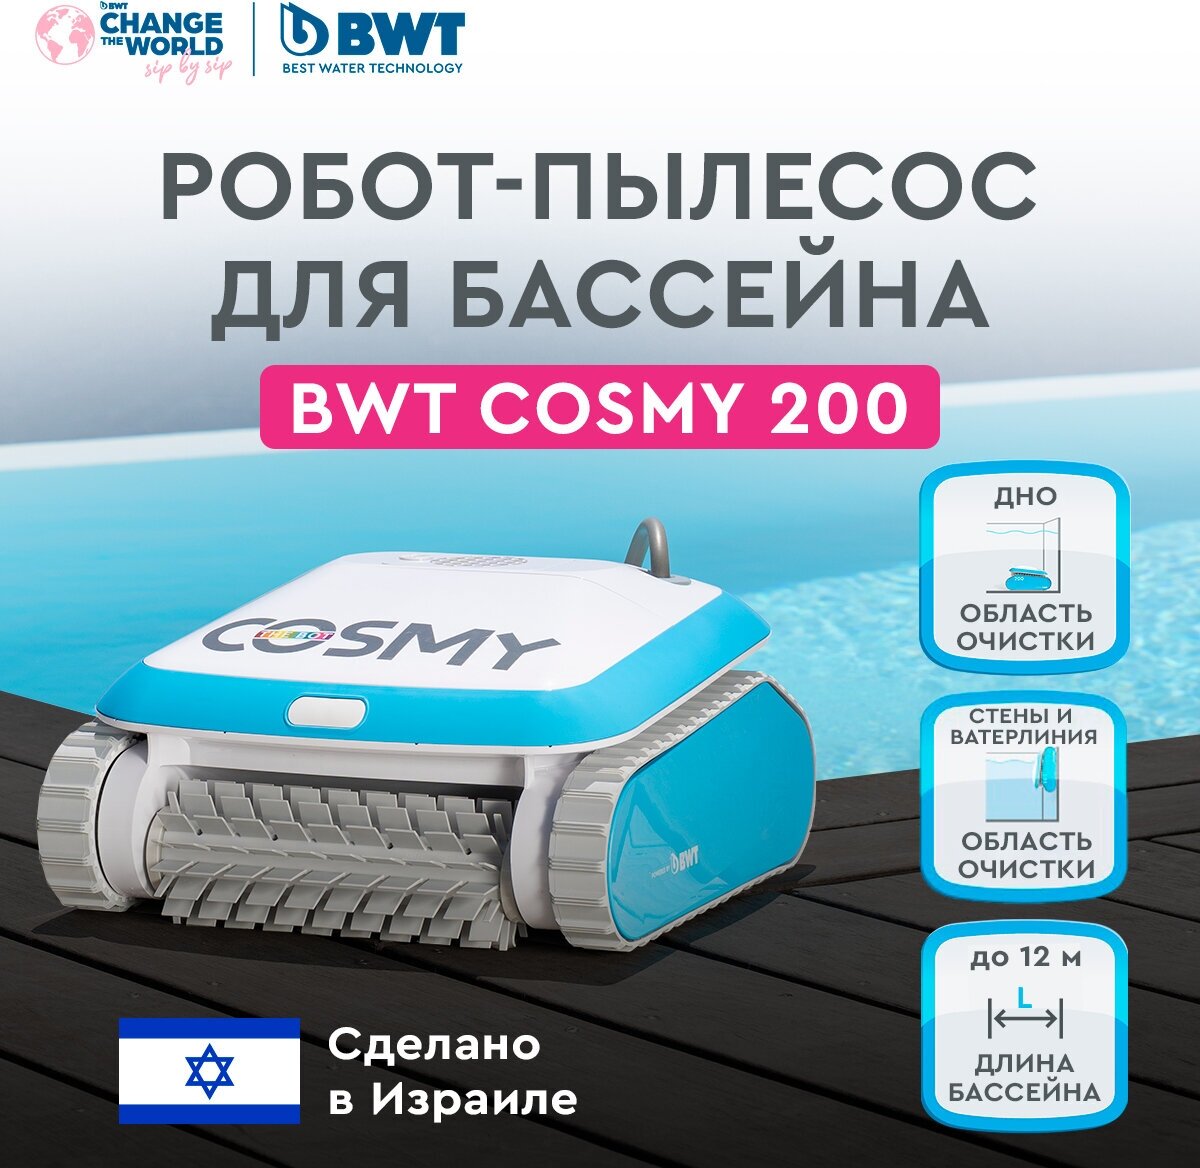 Робот-пылесос для бассейна BWT COSMY 200 для очистки дна, стен и ватерлинии - фотография № 1